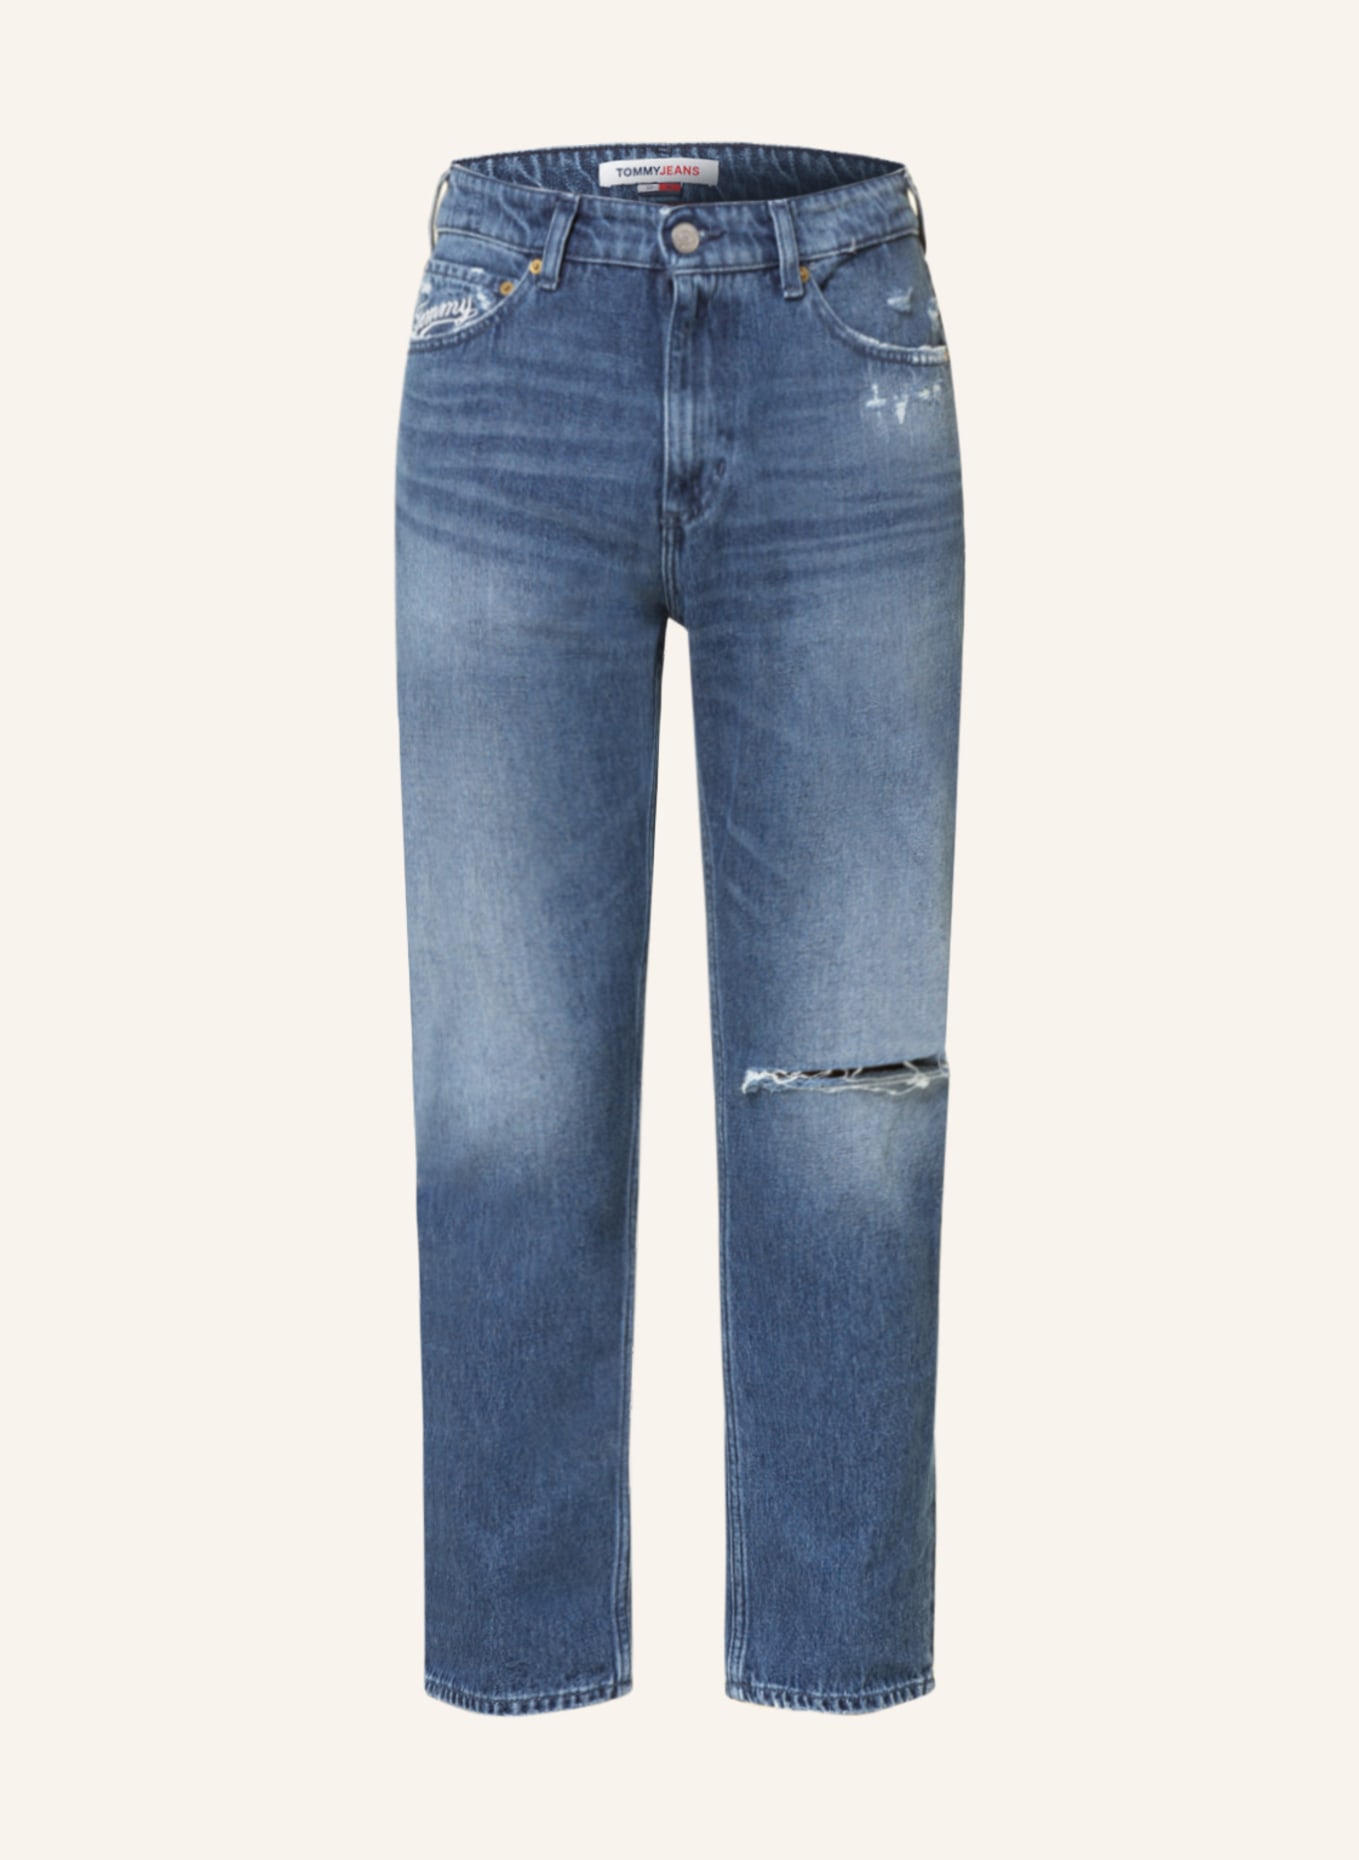 TOMMY JEANS Destroyed jeans SCANTON slim fit, Color: 1A5 Denim Medium 02 (Image 1)